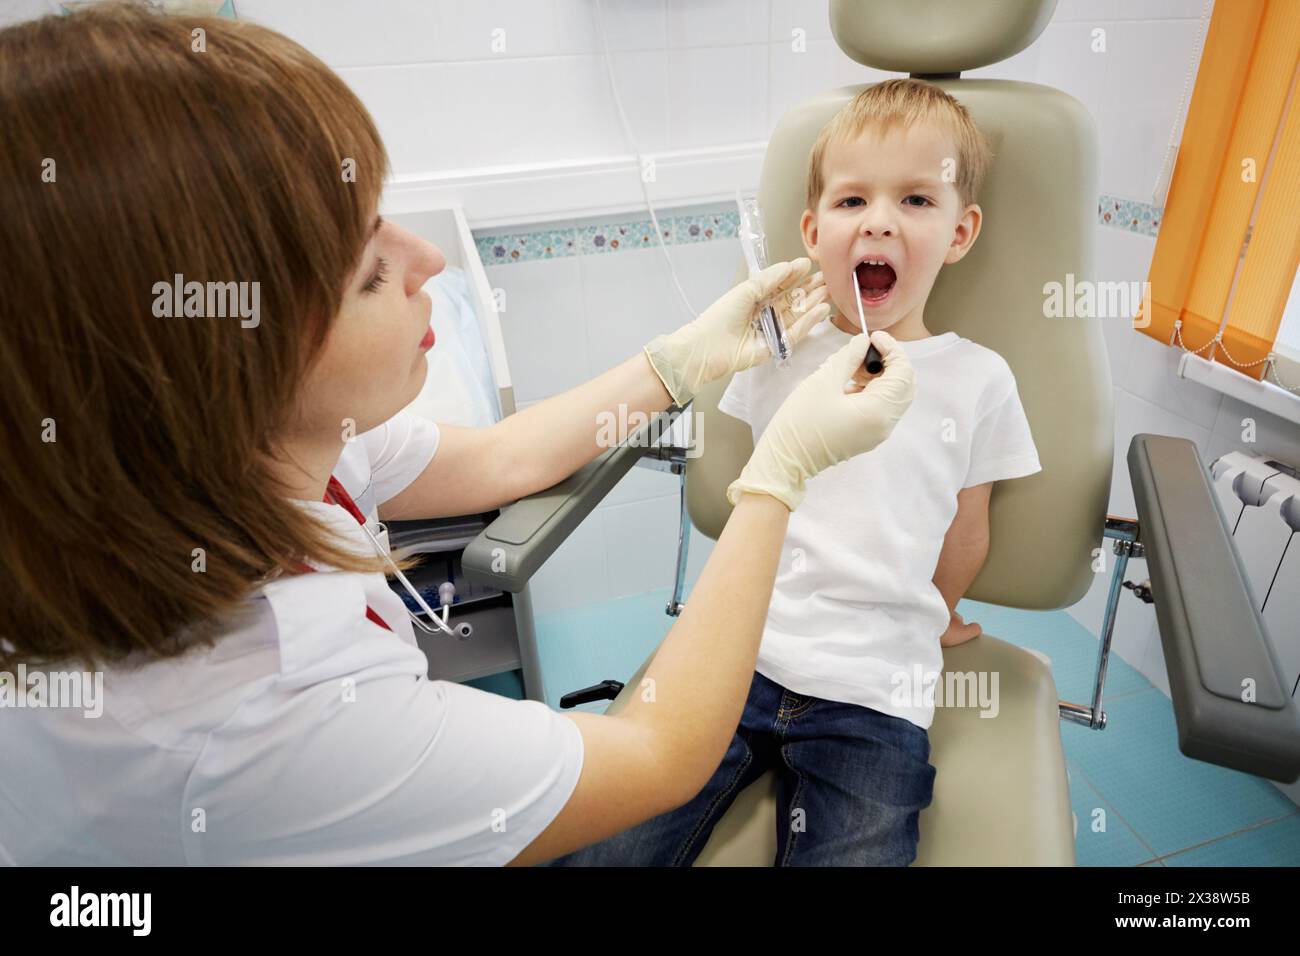 Le médecin examine la bouche de l'enfant assis dans le fauteuil médical. Banque D'Images